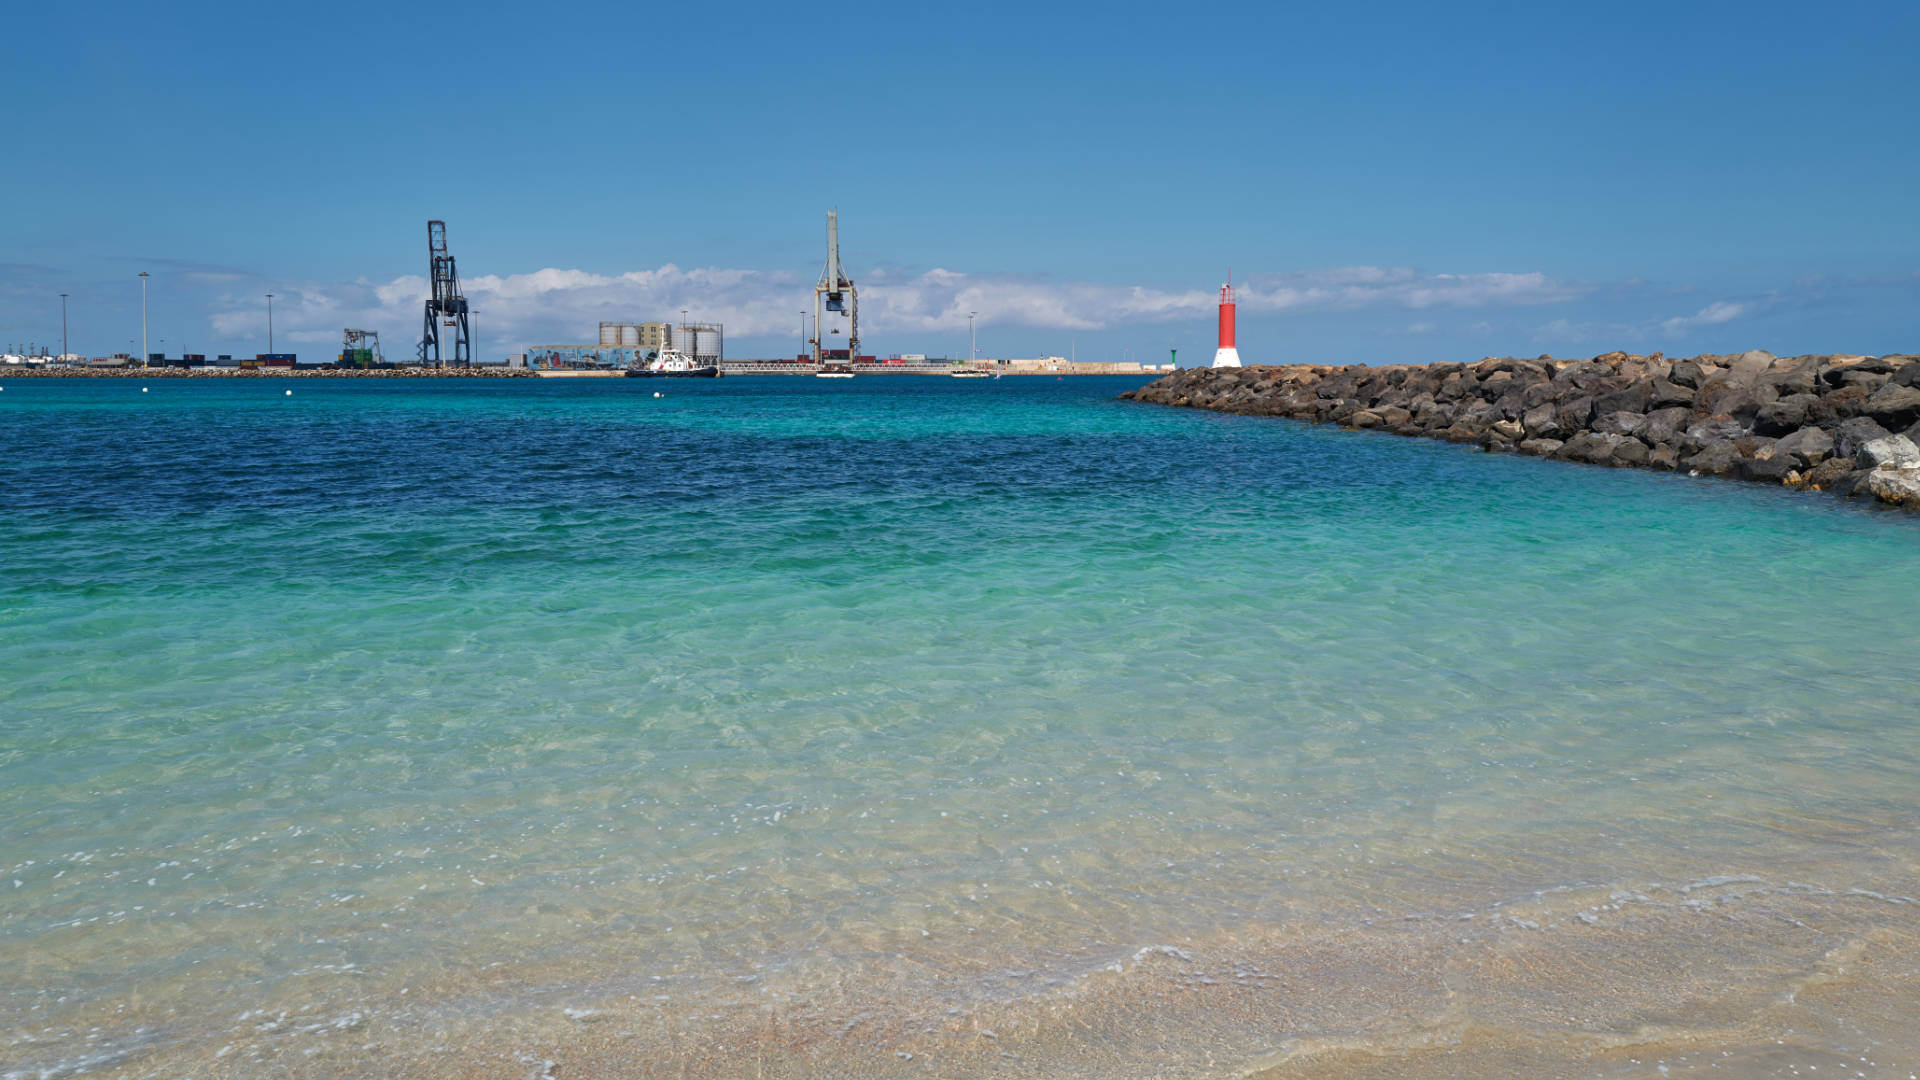 Playa de los Pozos Puerto del Rosario Fuerteventura.